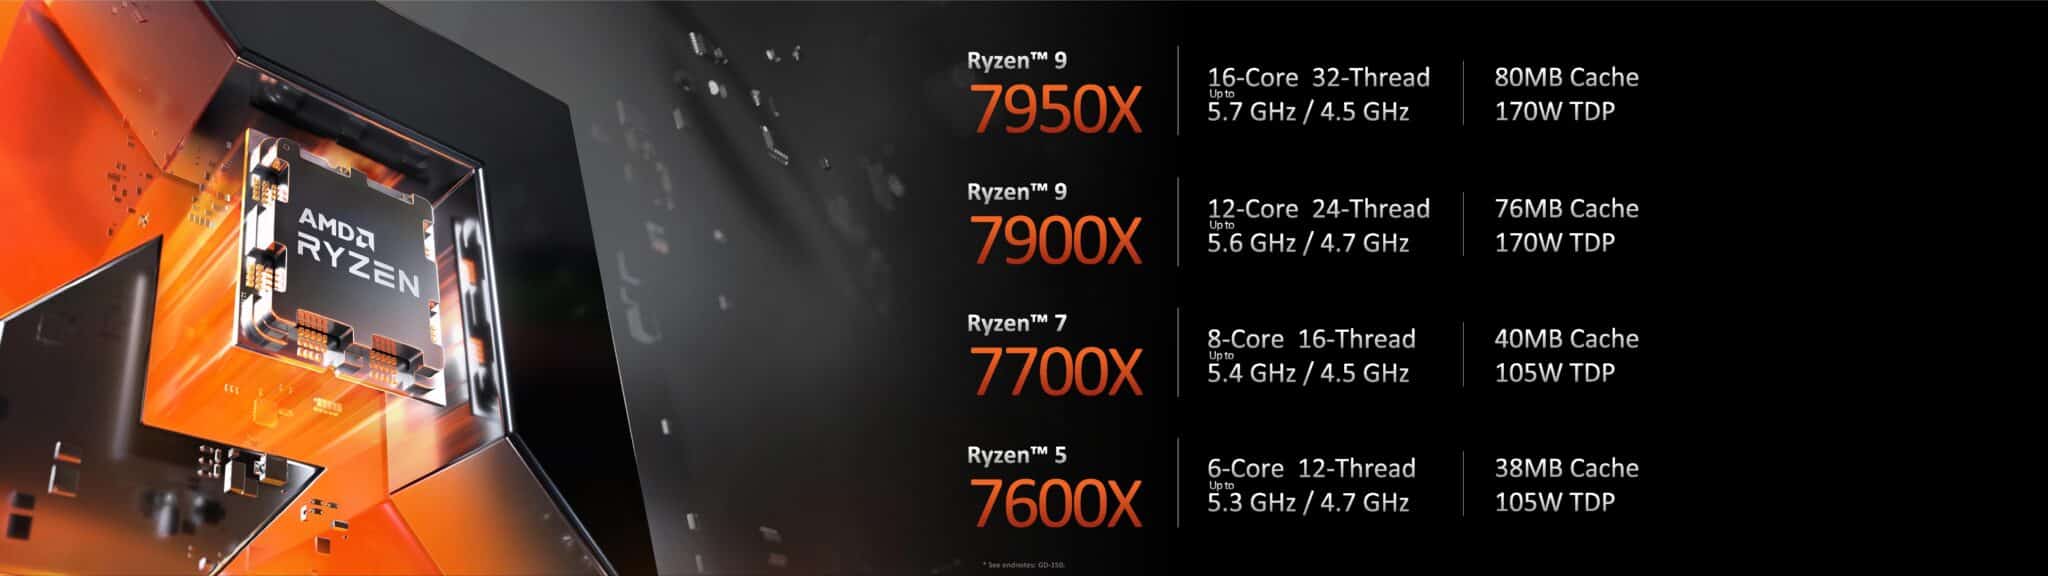 AMD lance finalement 3 nouveaux processeurs en socket AM4